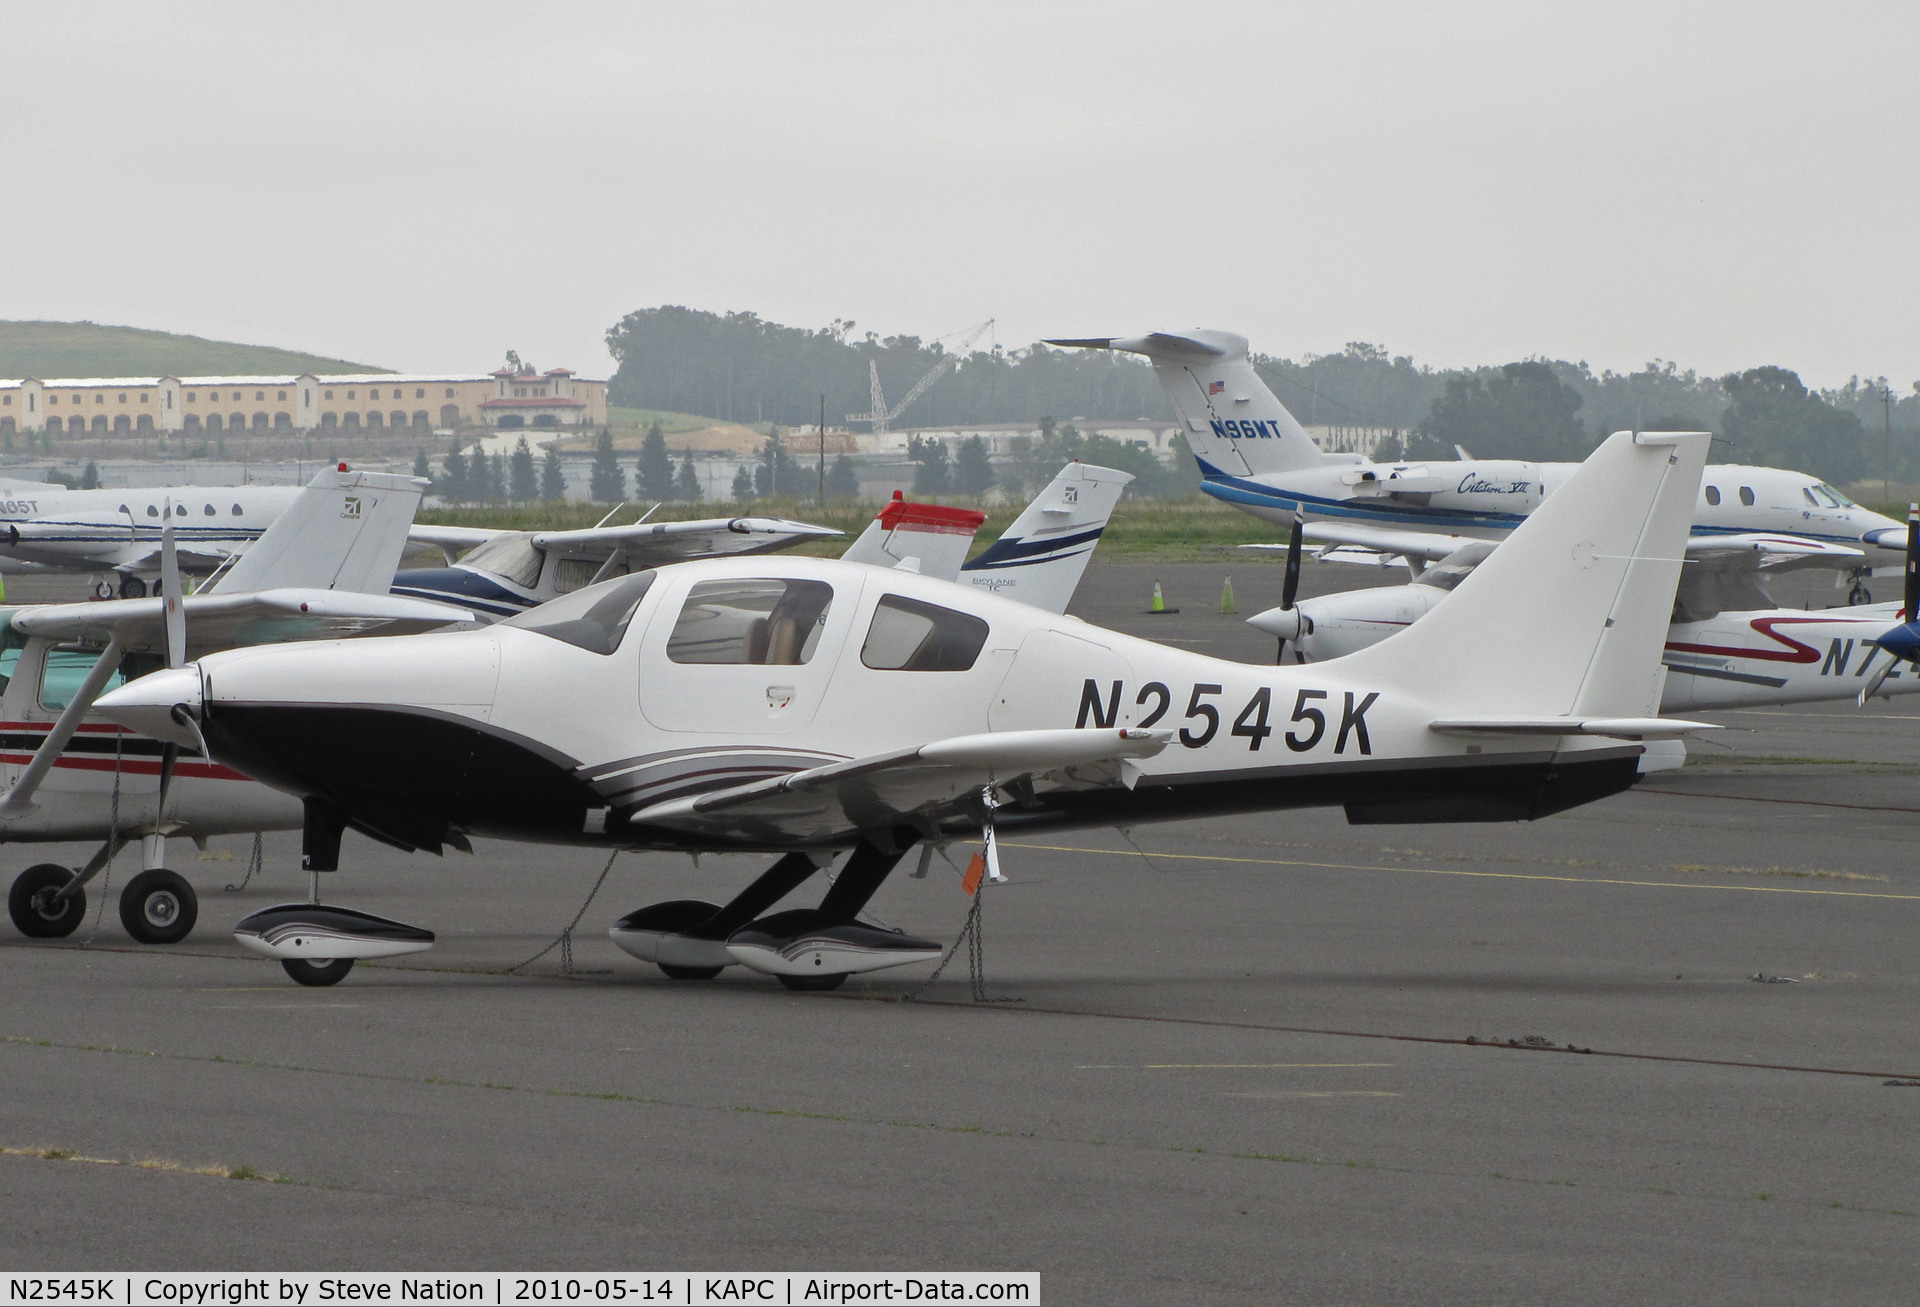 N2545K, 2004 Lancair LC41-550FG C/N 41039, Seattle-based 2004 Lancair LC41-550FG registered to Artisan aviation